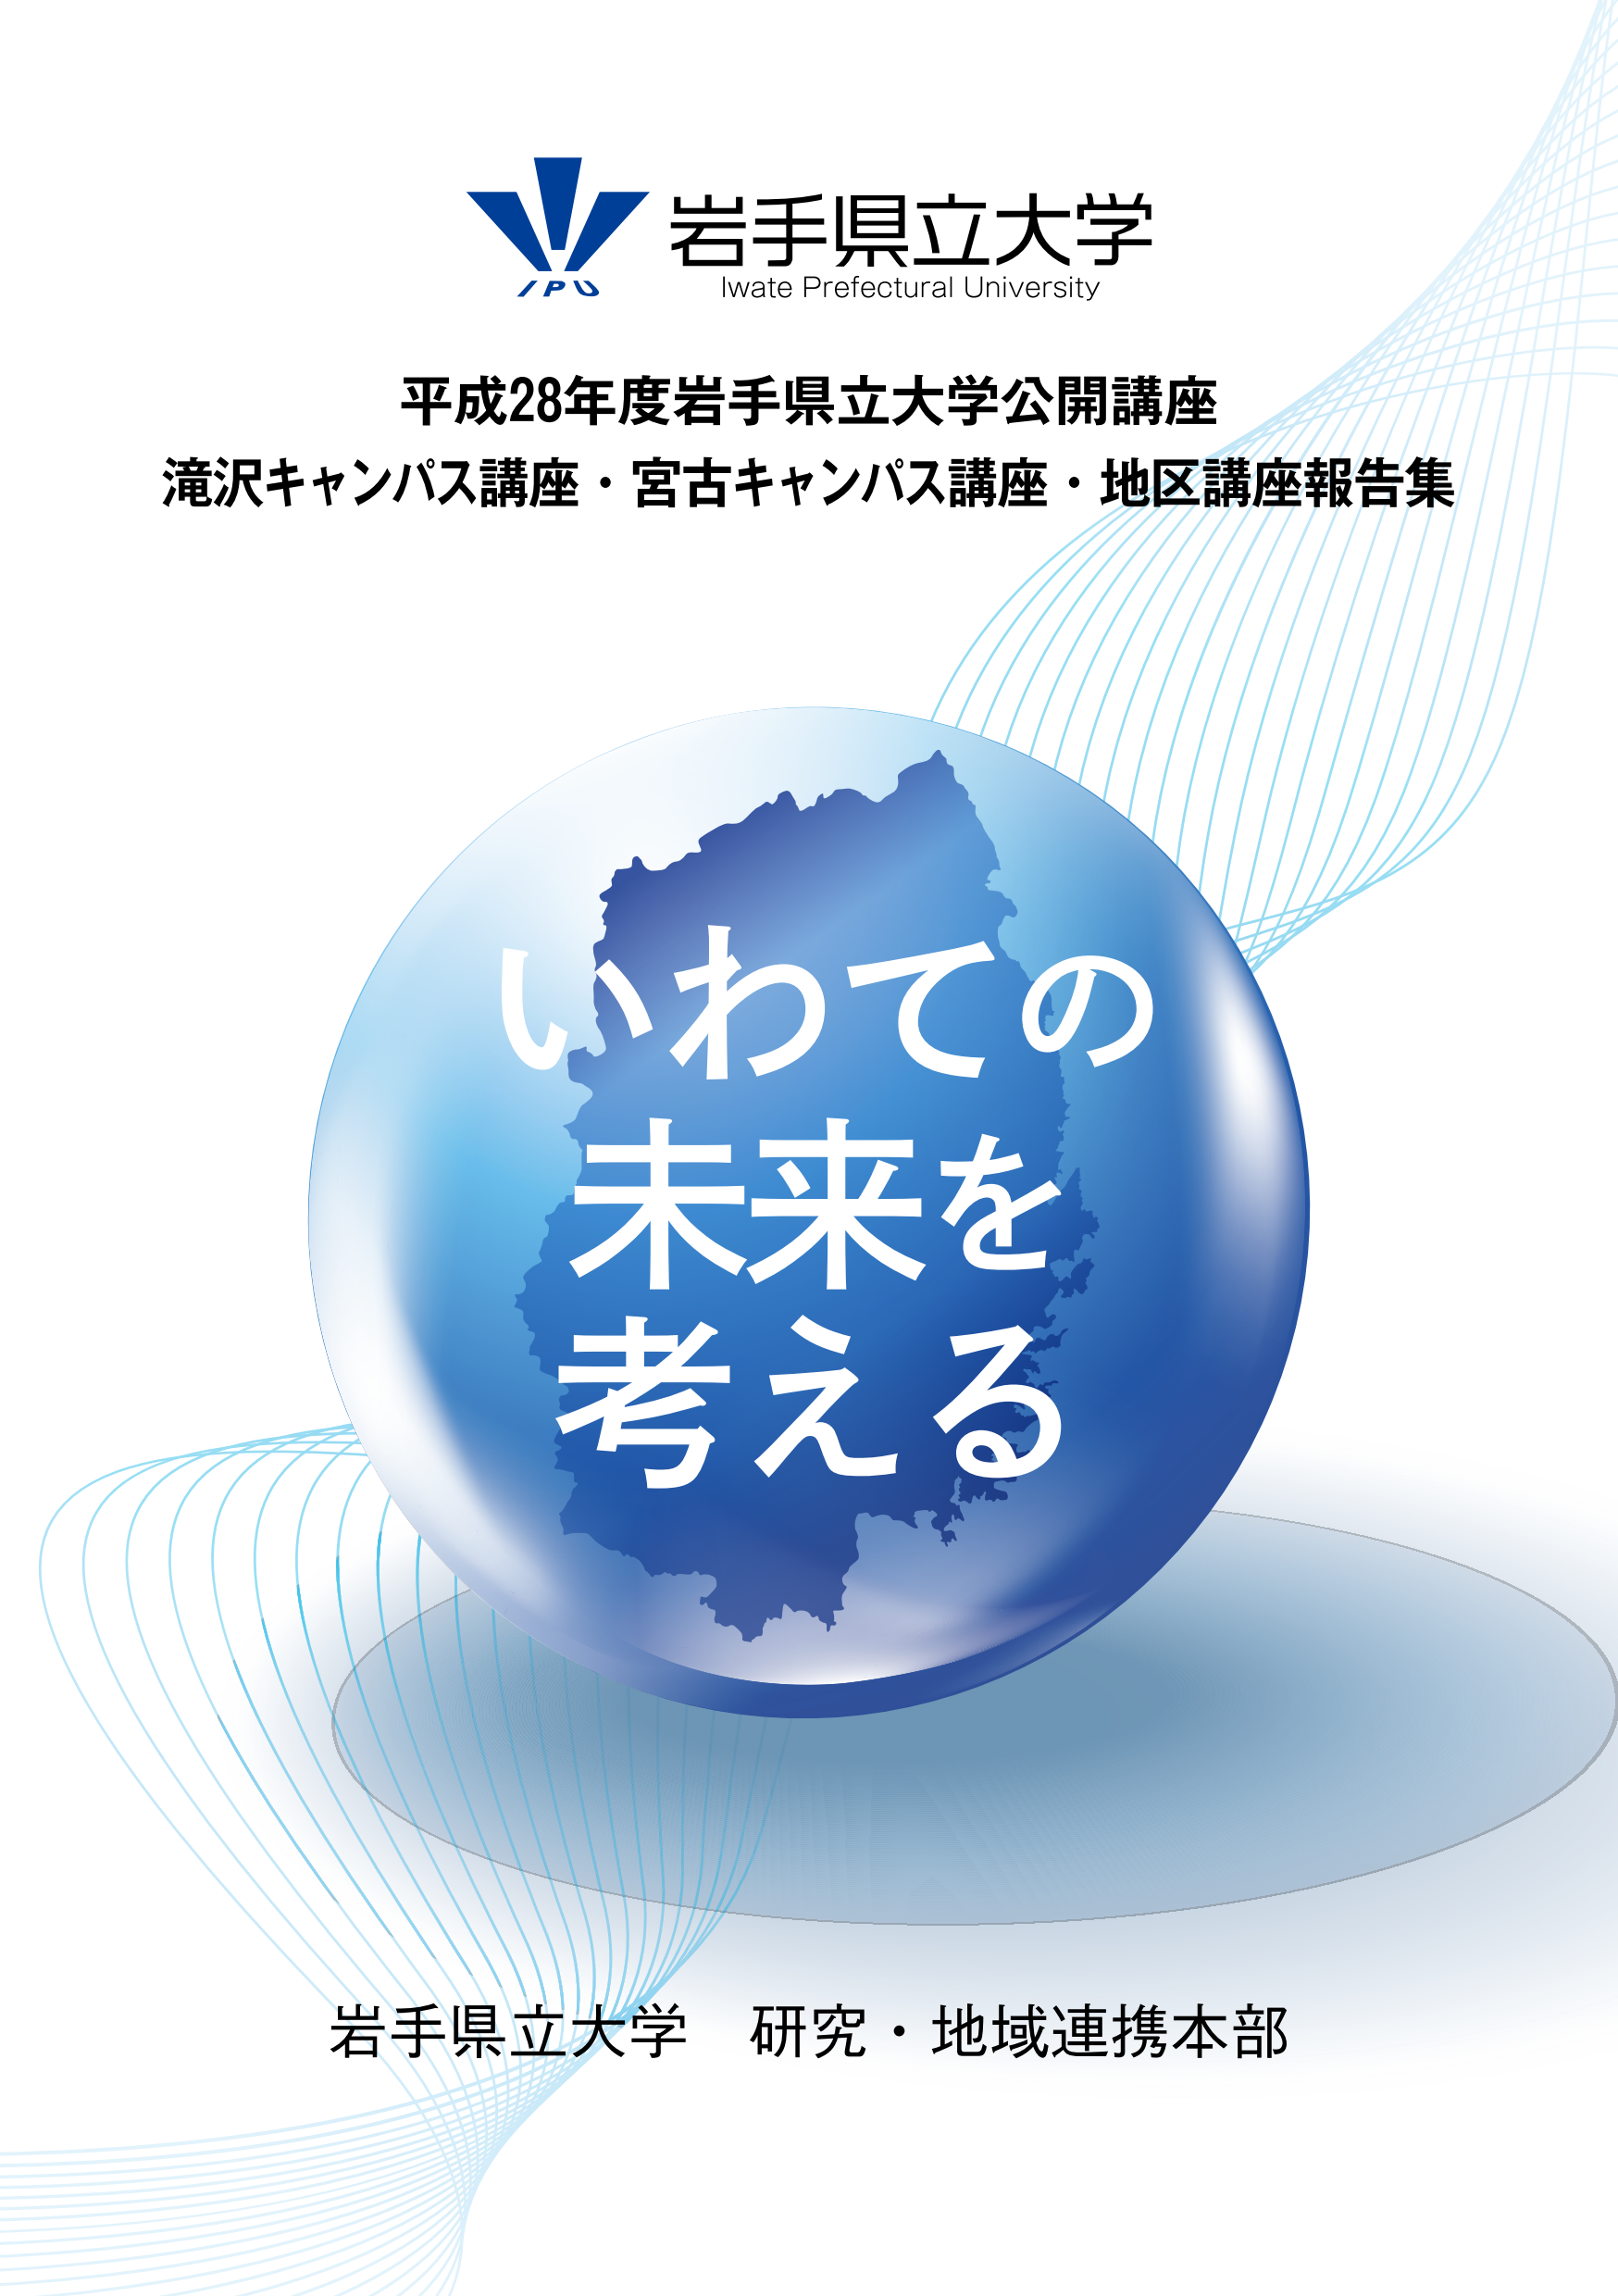 http://www.iwate-pu.ac.jp/%E8%A1%A8%E7%B4%99%E7%94%BB%E5%83%8F.tif